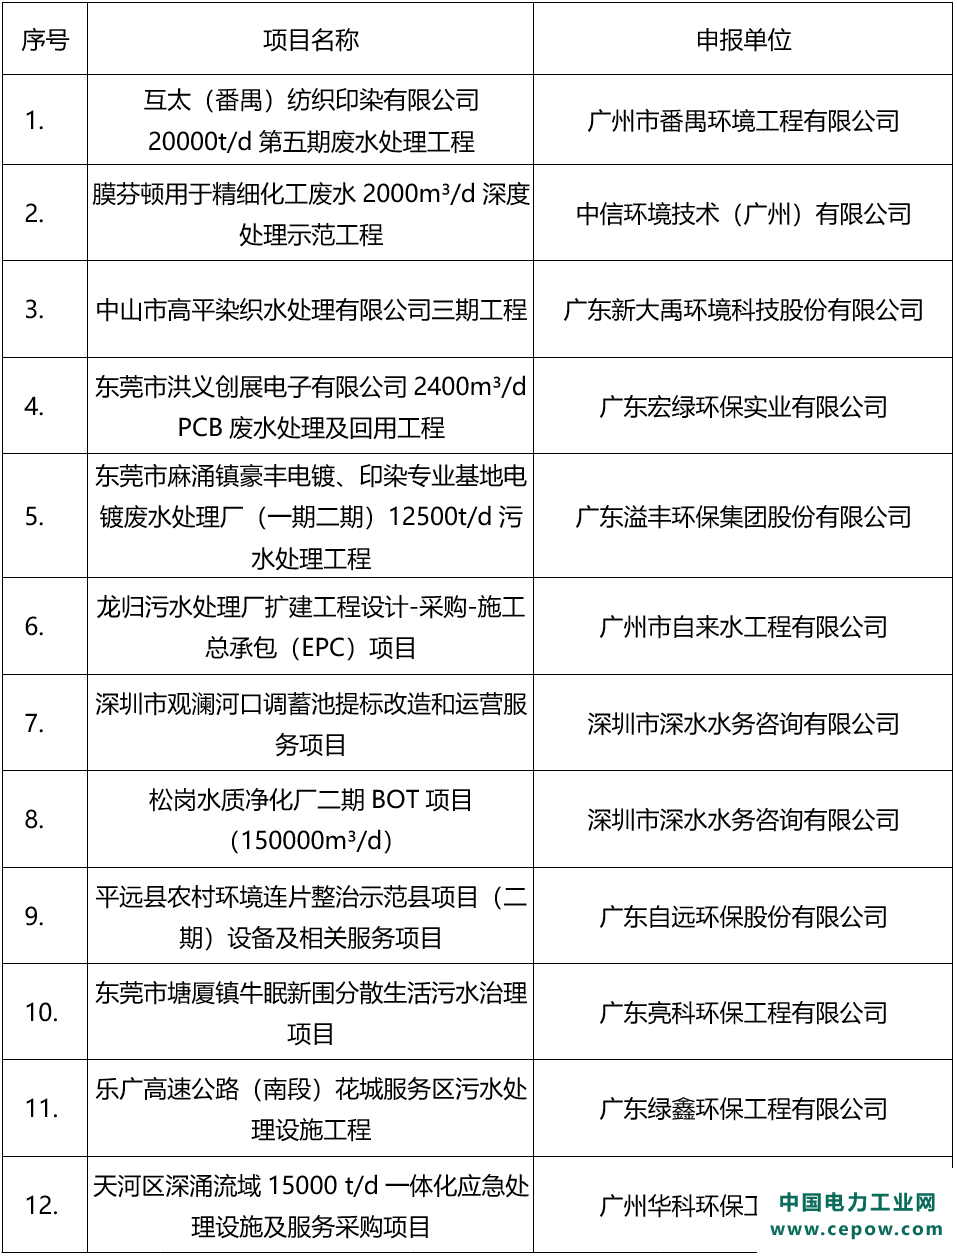 2020年度广东省环境保护优秀示范工程名单